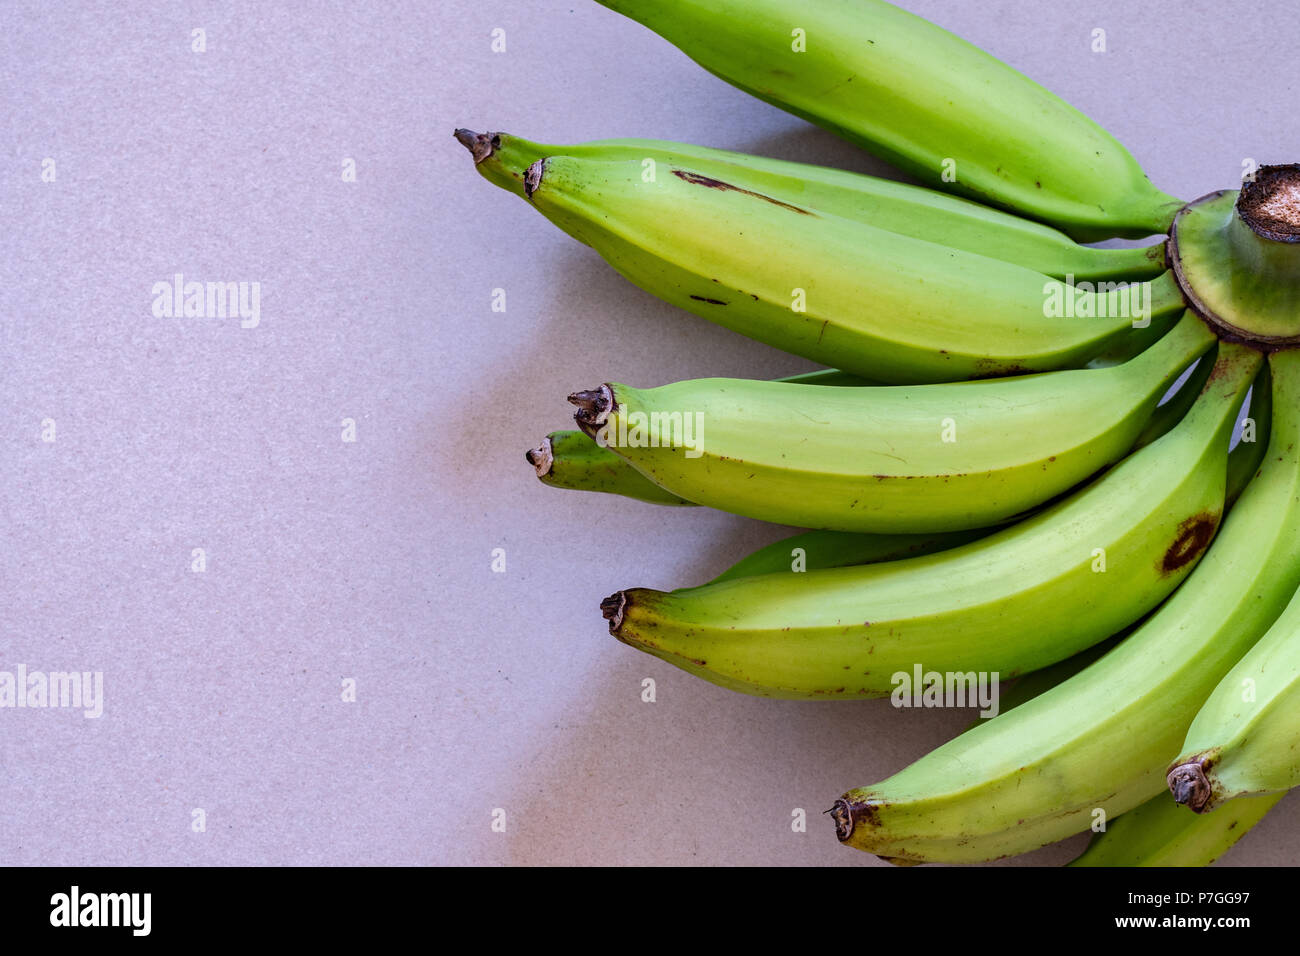 Un mazzetto di verde giovane piantaggine che assomigliano a banane, ma sono di dimensioni più grandi. Può essere fritto, cotto, grigliate, bollito o quando è verde o maturati. Foto Stock